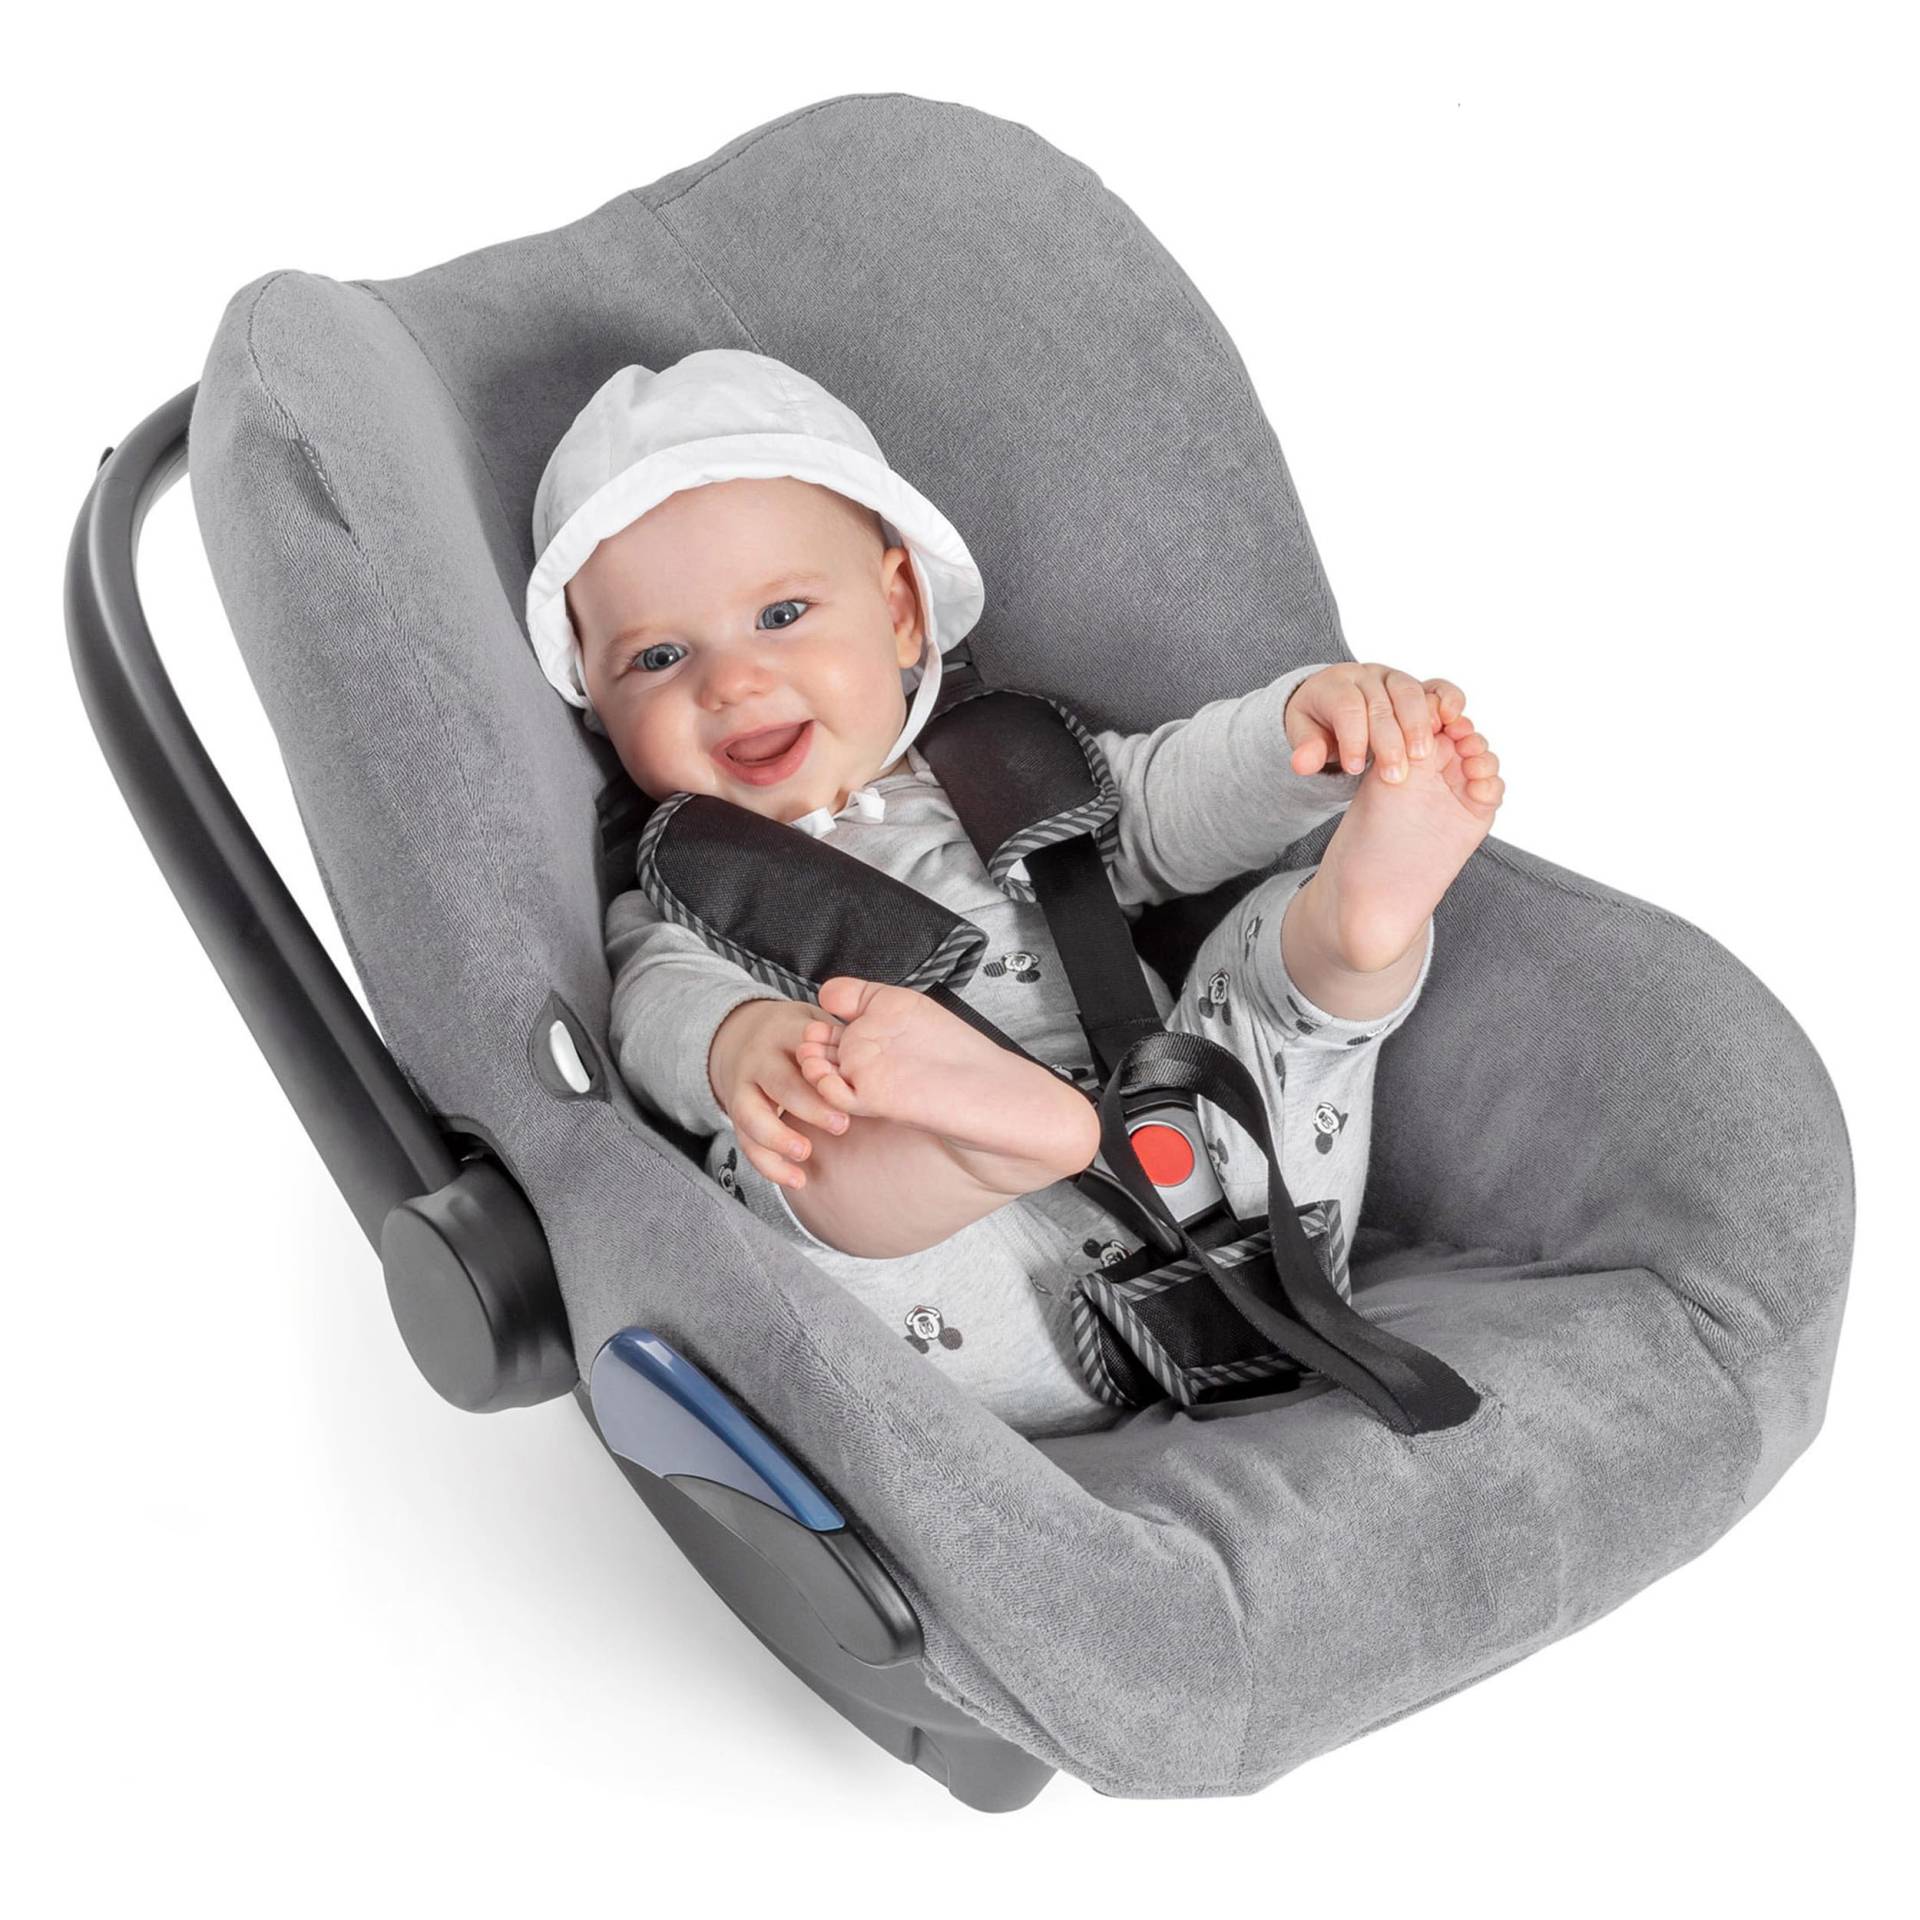 Zamboo Bezug für Maxi Cosi Citi Babyschale - Schutzbezug/Sommerbezug mit Perfekter Passform für Autositz Citi, atmungsaktiv gegen Schwitzen, maschinenwaschbar - Grau (Standard) von Zamboo